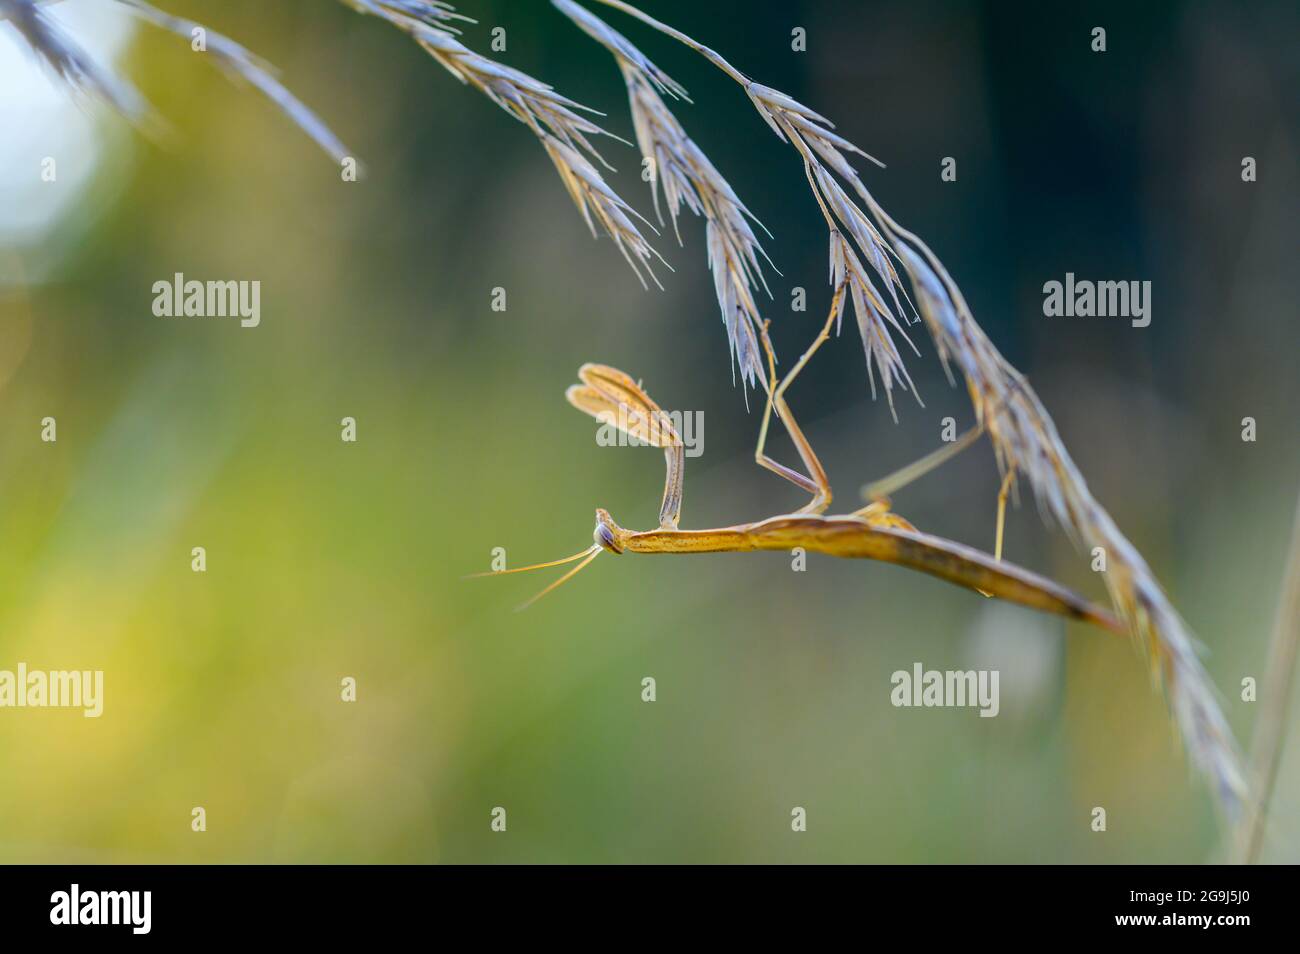 Une nymphe de la mante européenne (Mantis religiosa) sur une herbe dans un habitat naturel. Une nymphe d'une mantis, animal mâle. Heure d'or, coucher de soleil en arrière-plan. Banque D'Images